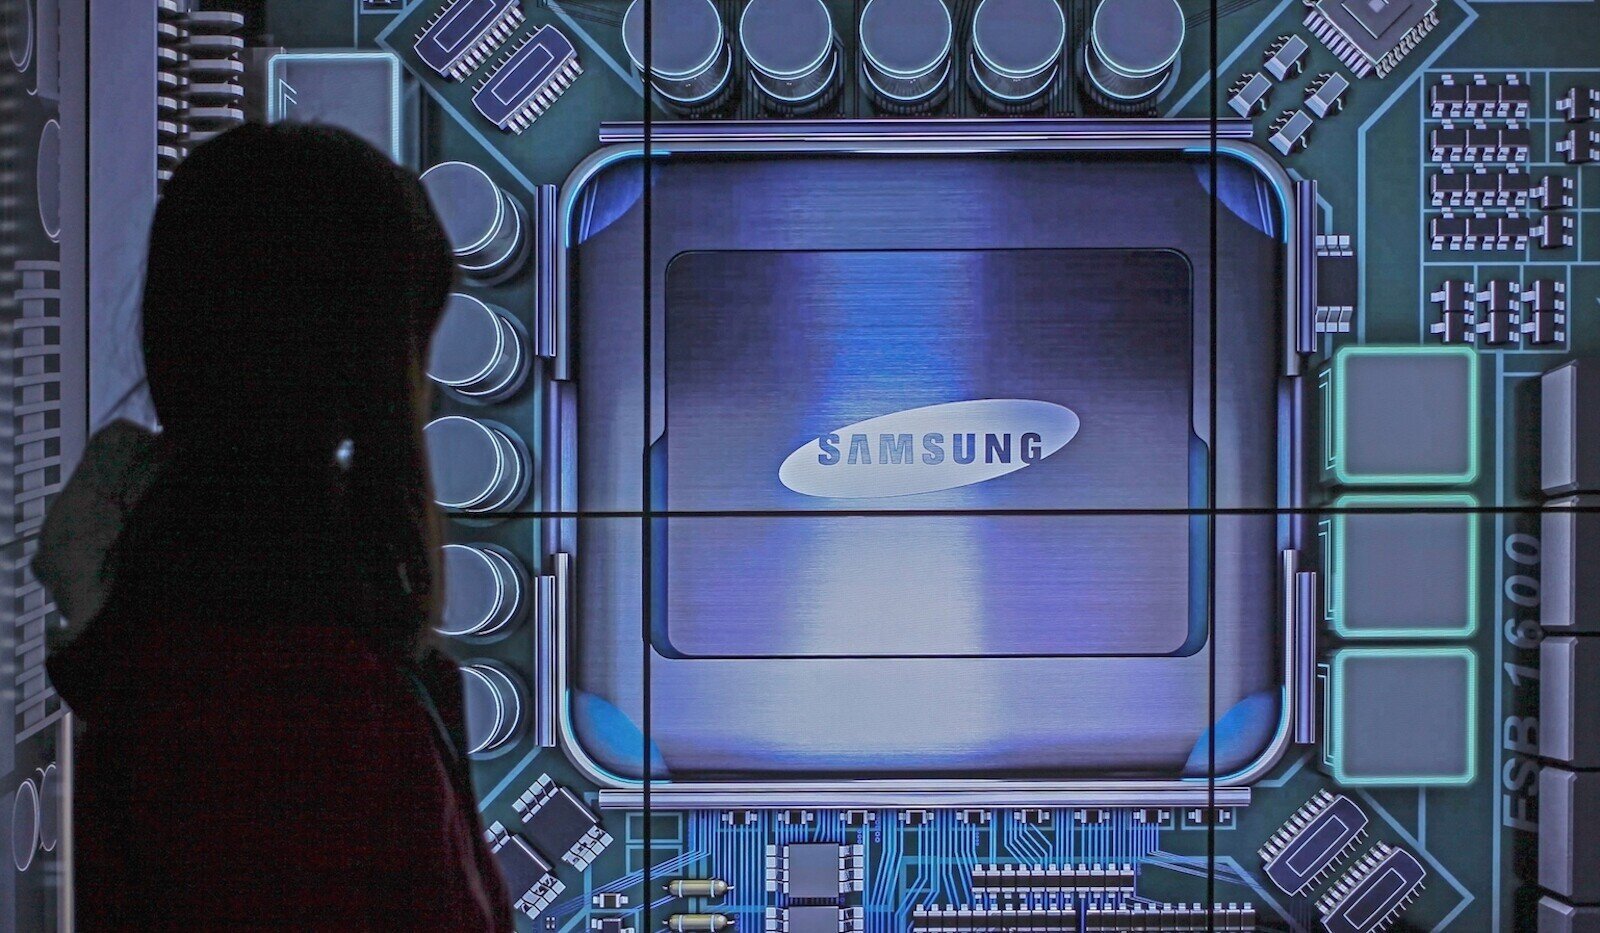 Η Samsung ετοιμάζει τον επιταχυντή Mach-1 για να ανταγωνιστεί την NVIDIA στον τομέα του AI Inference